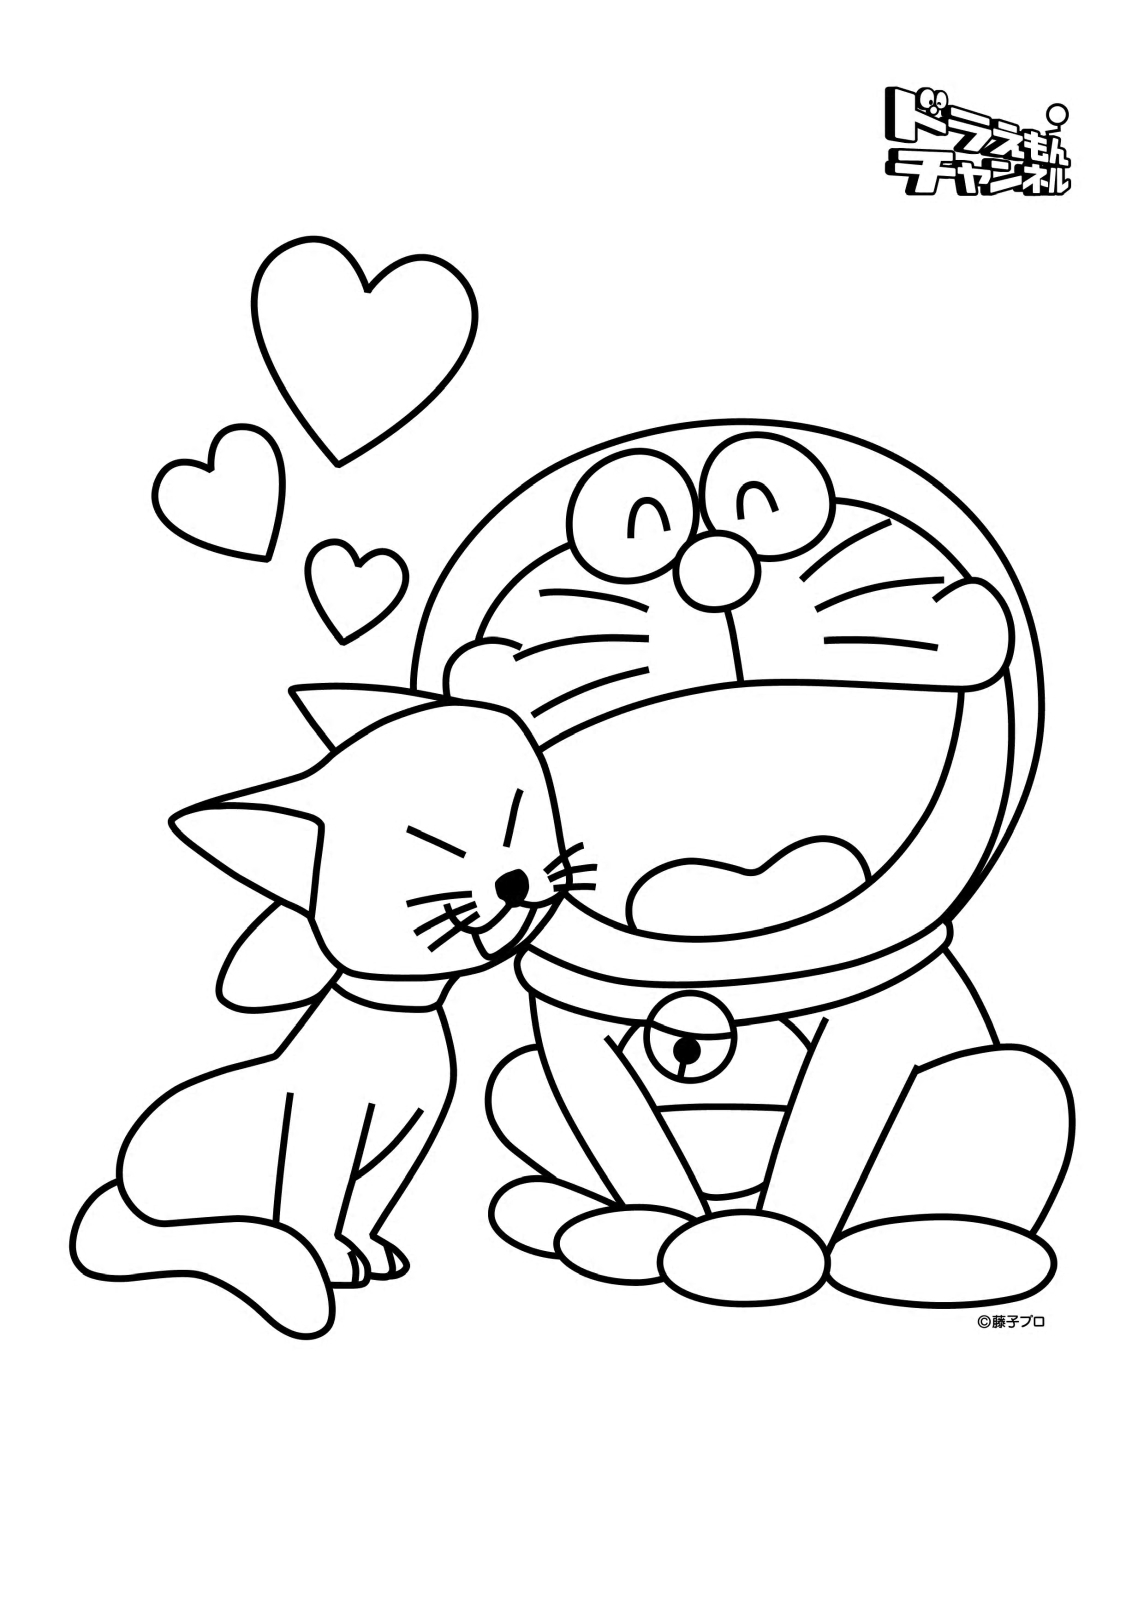 Doraemon e sua namorada, Mimi de Doraemon